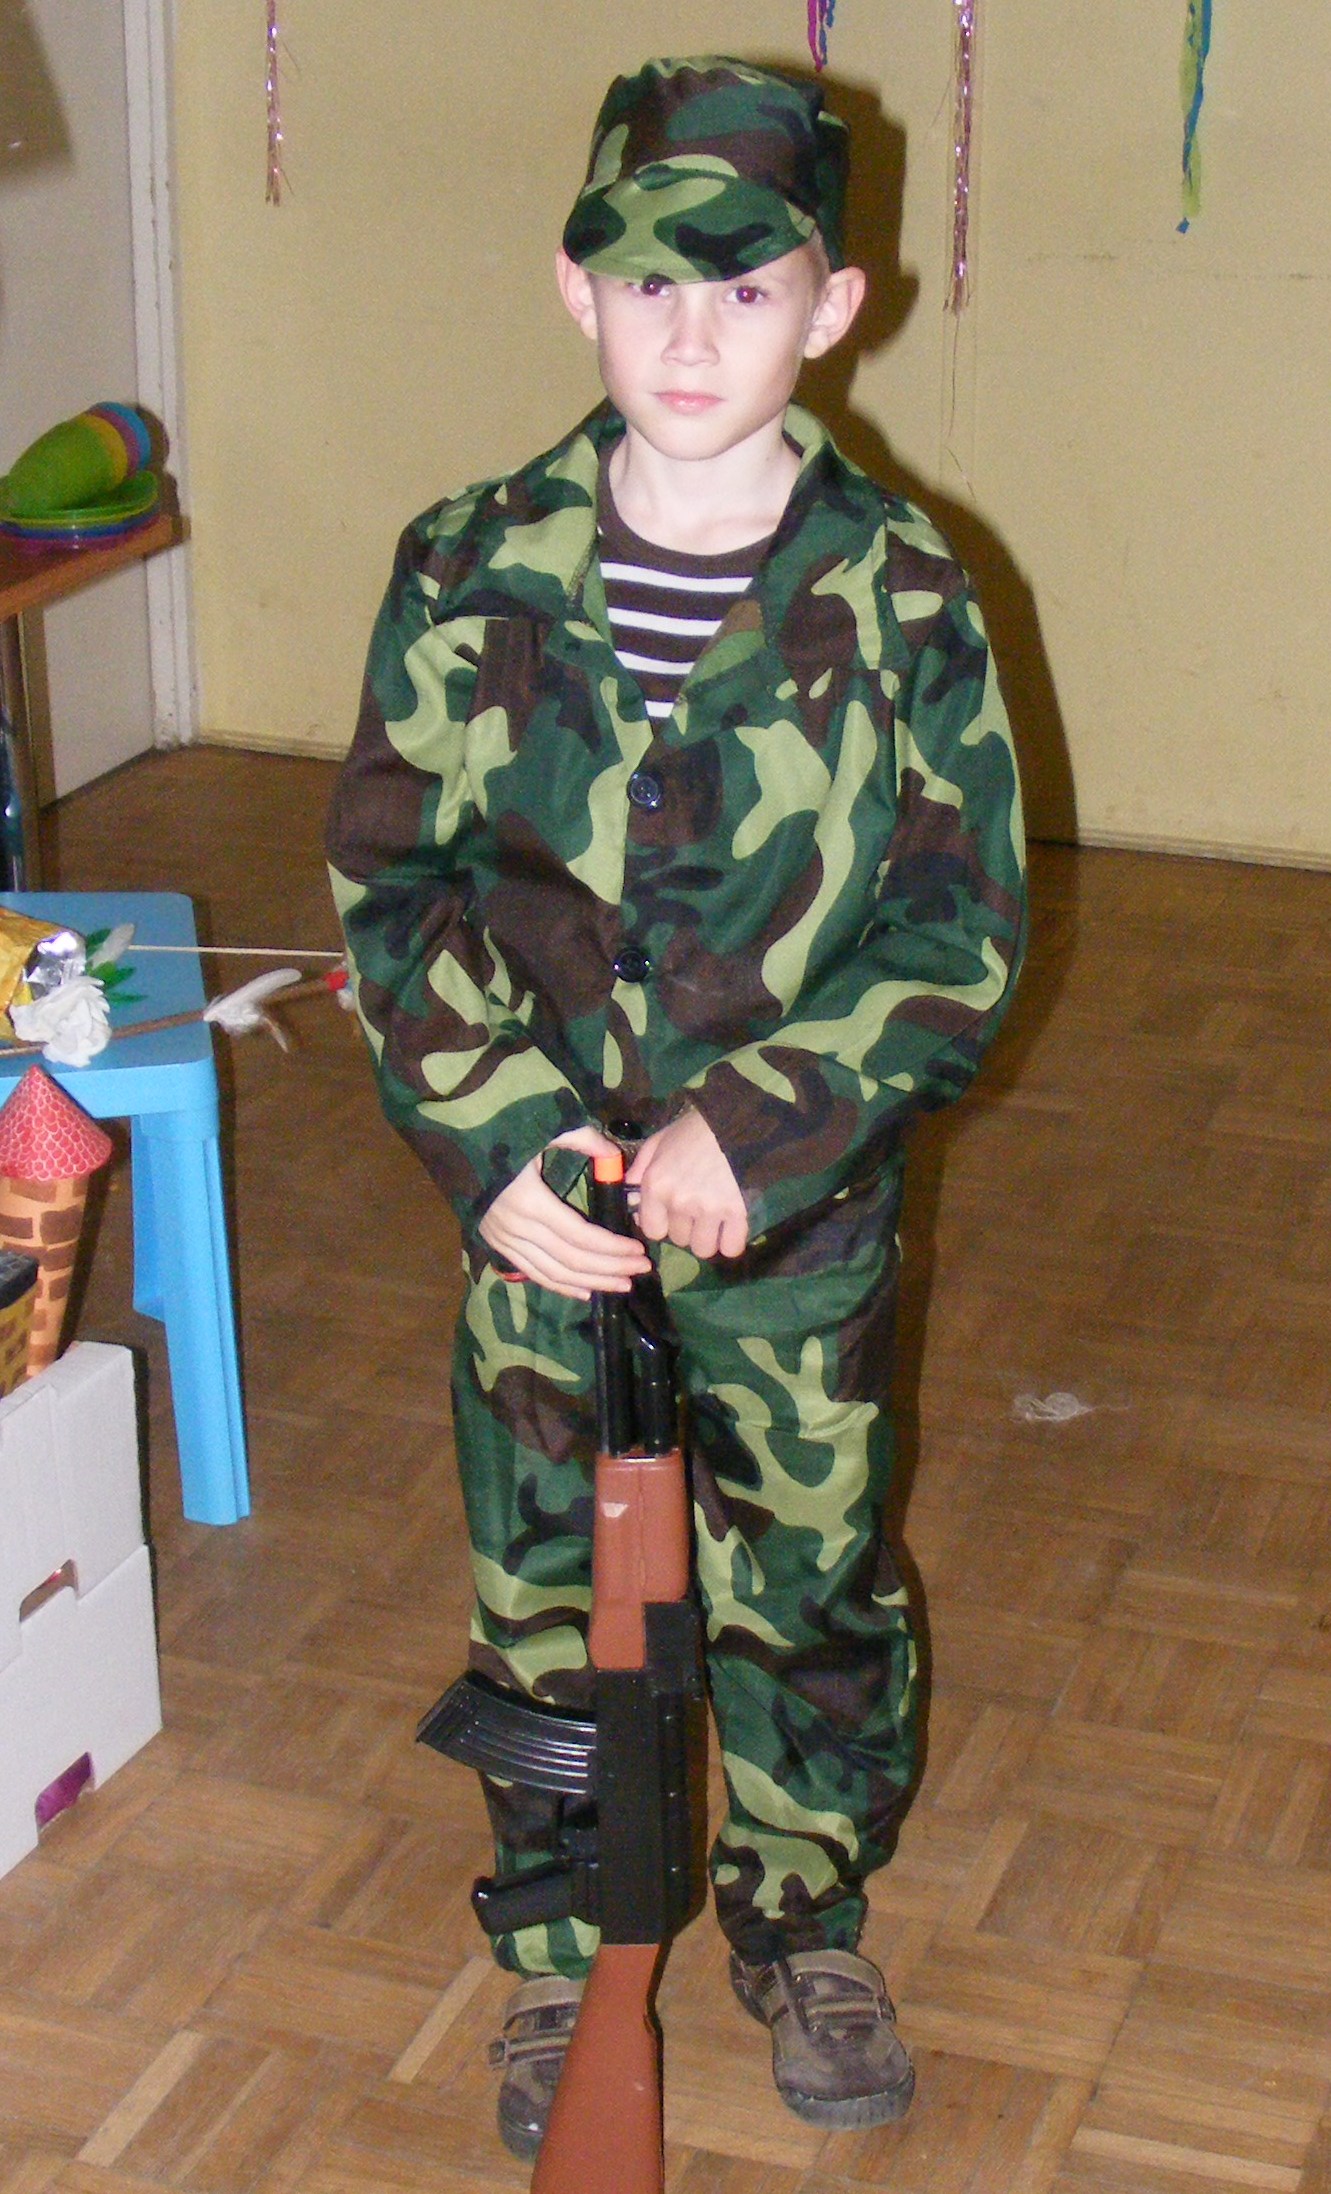 Gyerek katona?, vagy egy kisfi katonajelmezben??